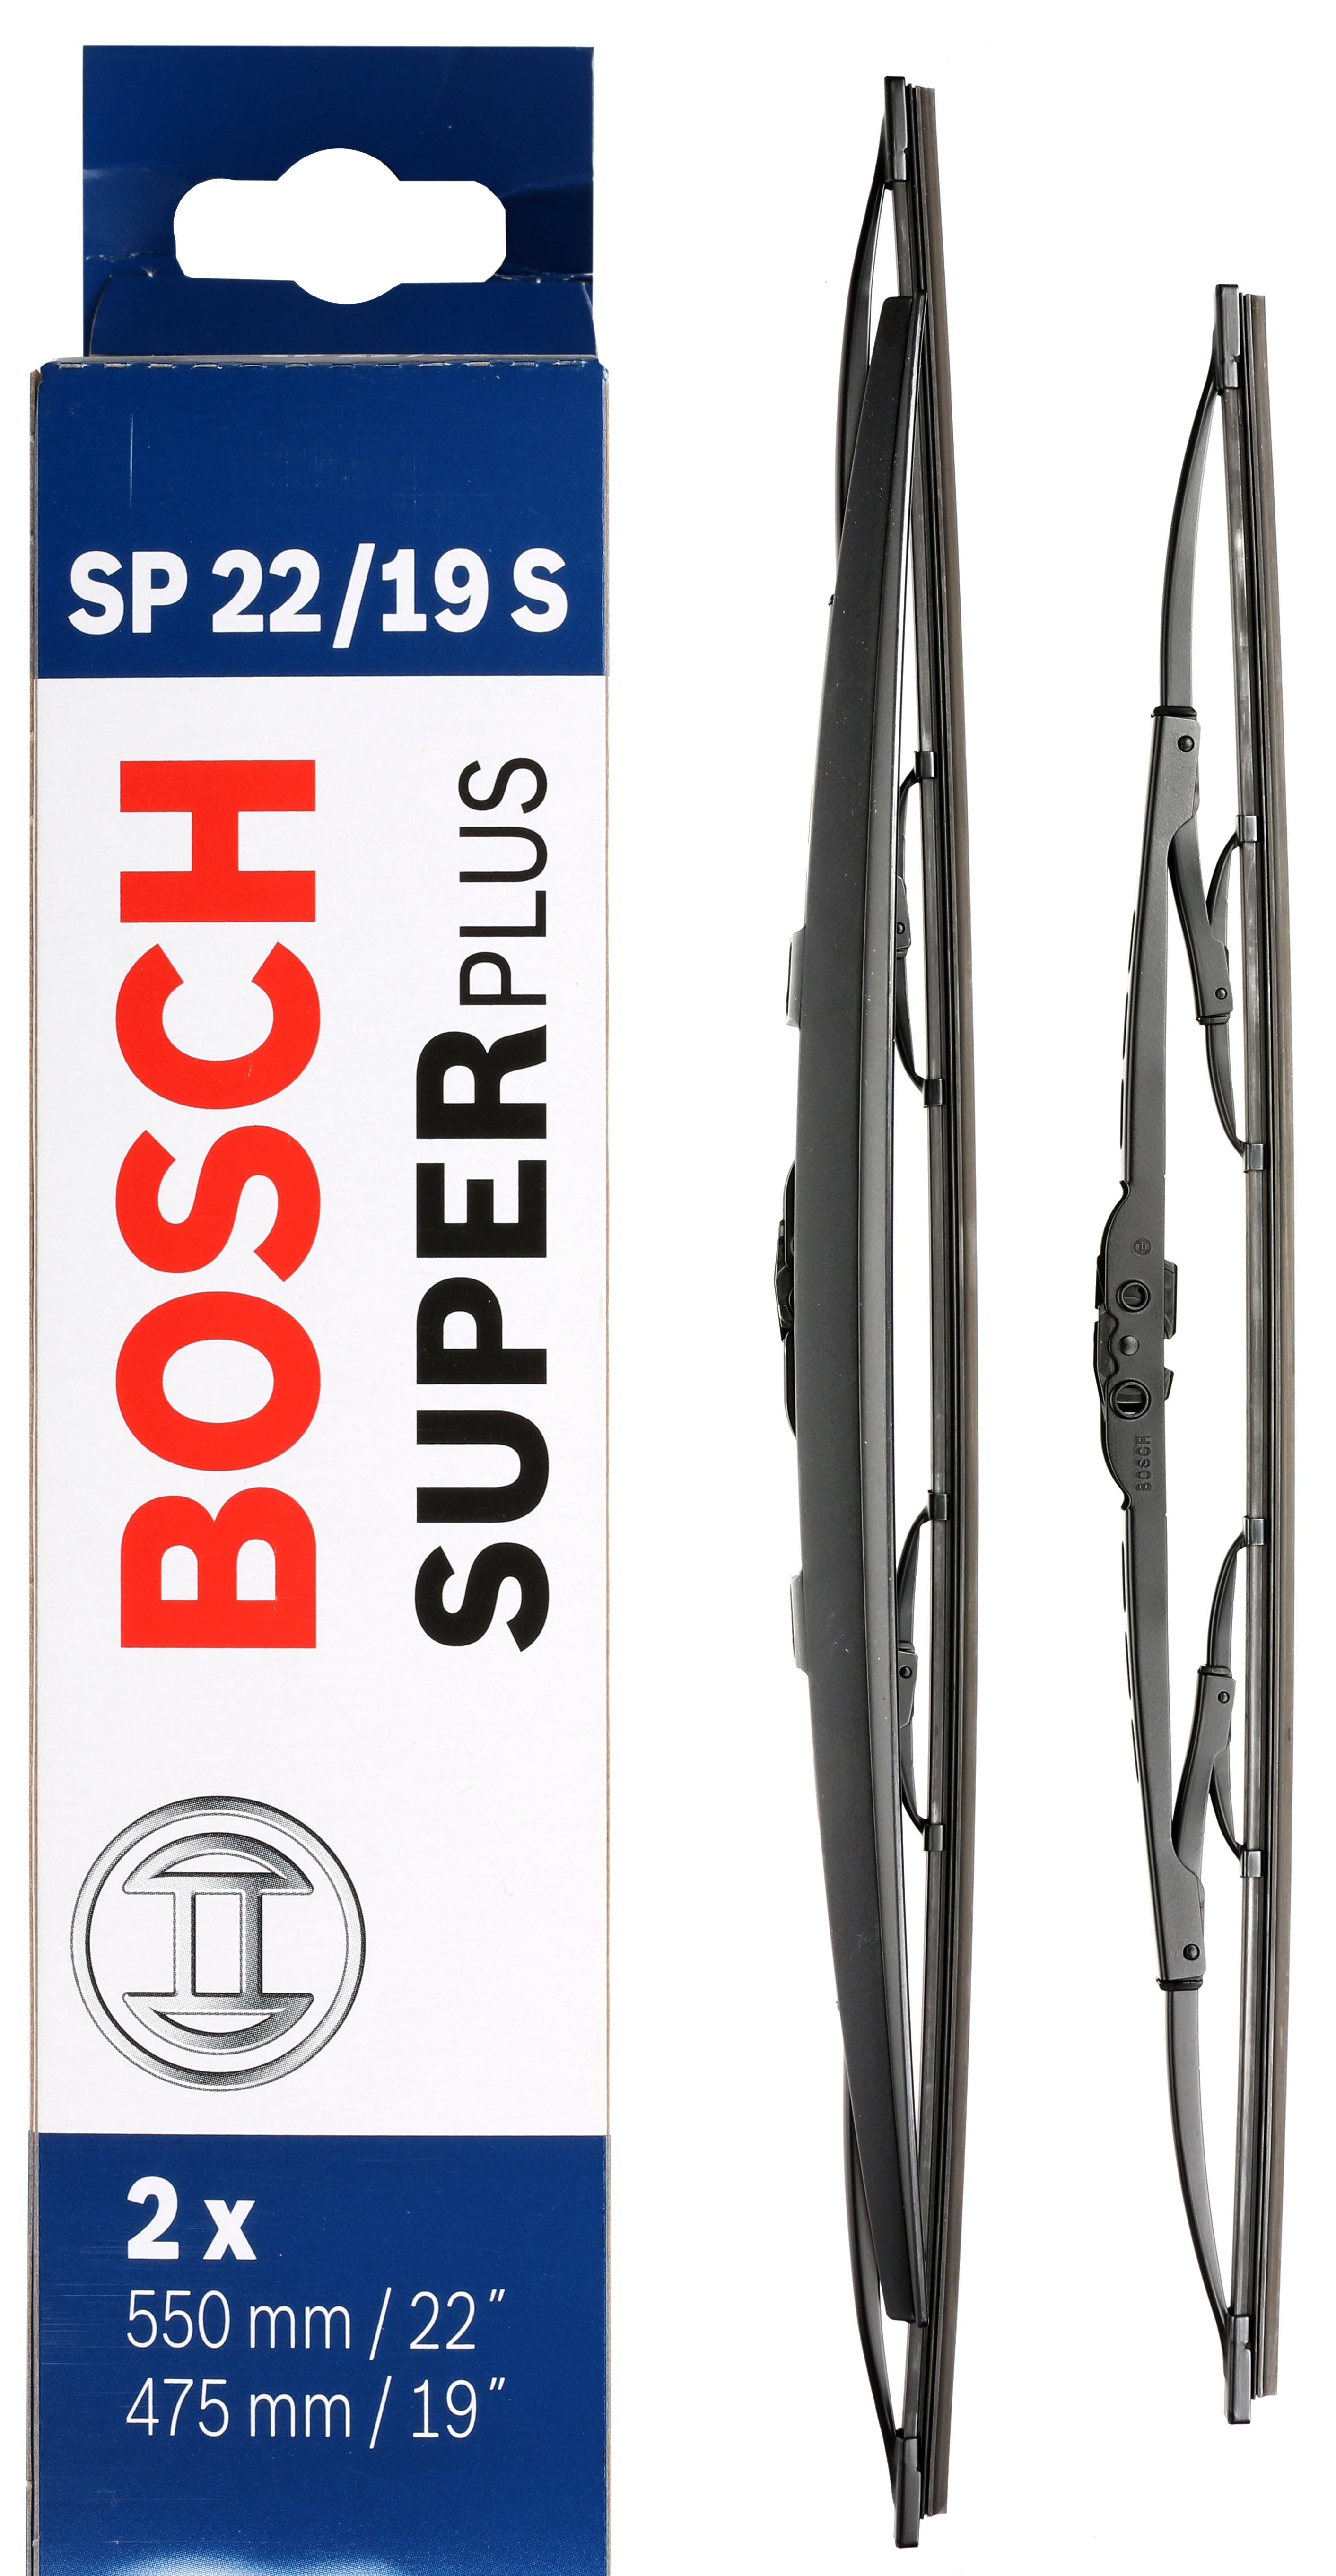 Bosch Sp22/19S Wiper Blades - Front Pair